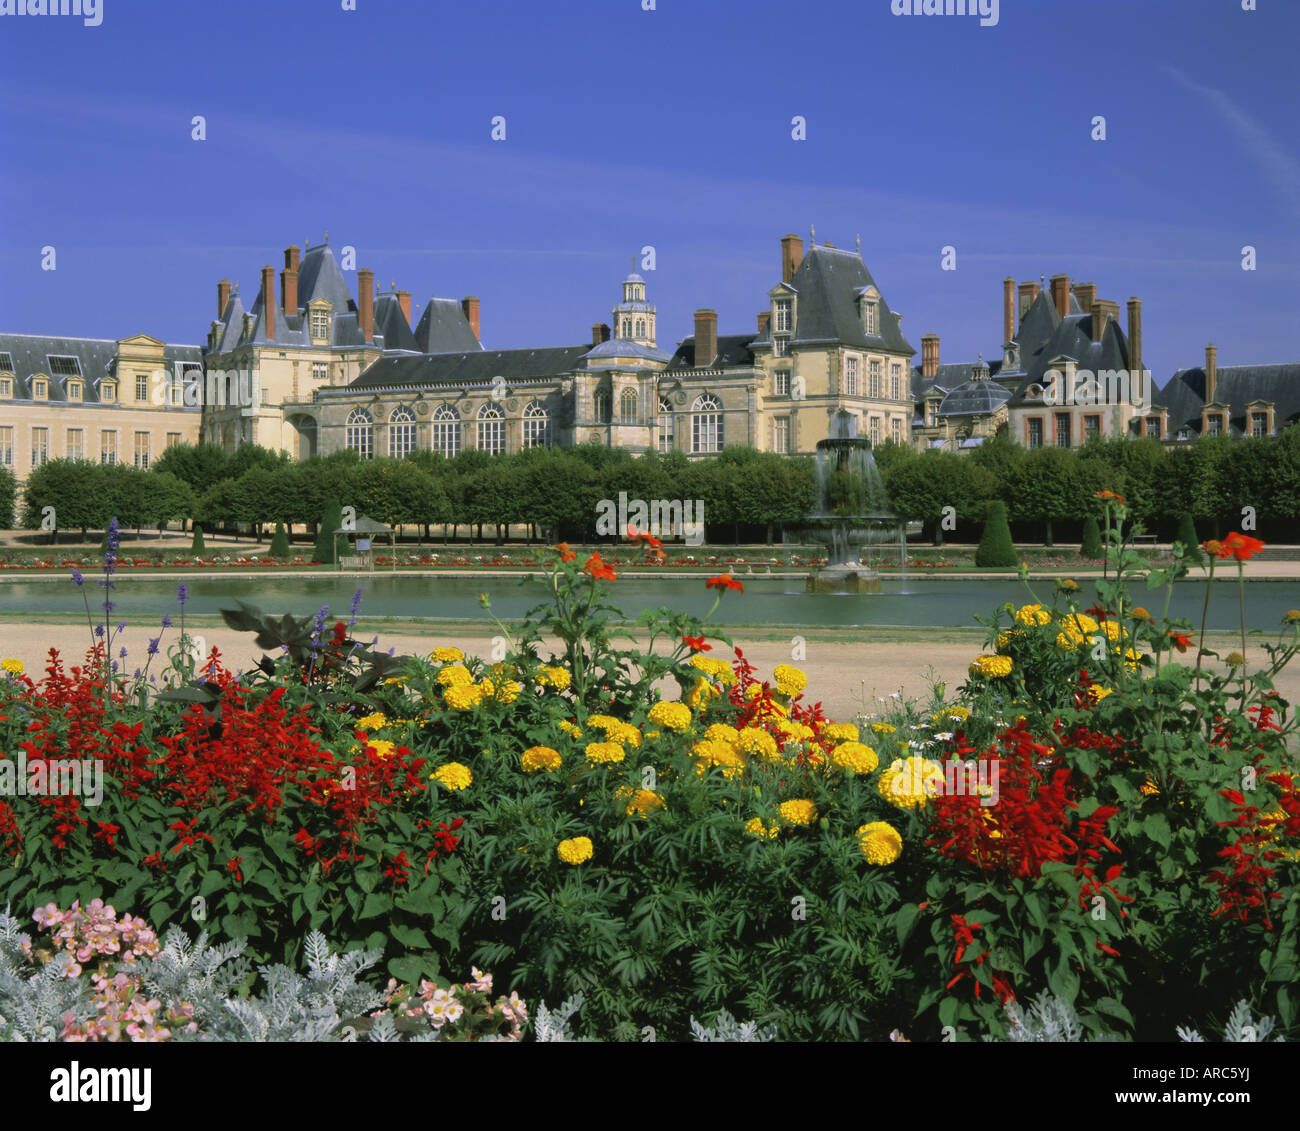 Château de Fontainebleau, UNESCO World Heritage Site, Fontainebleau, France, Europe Banque D'Images